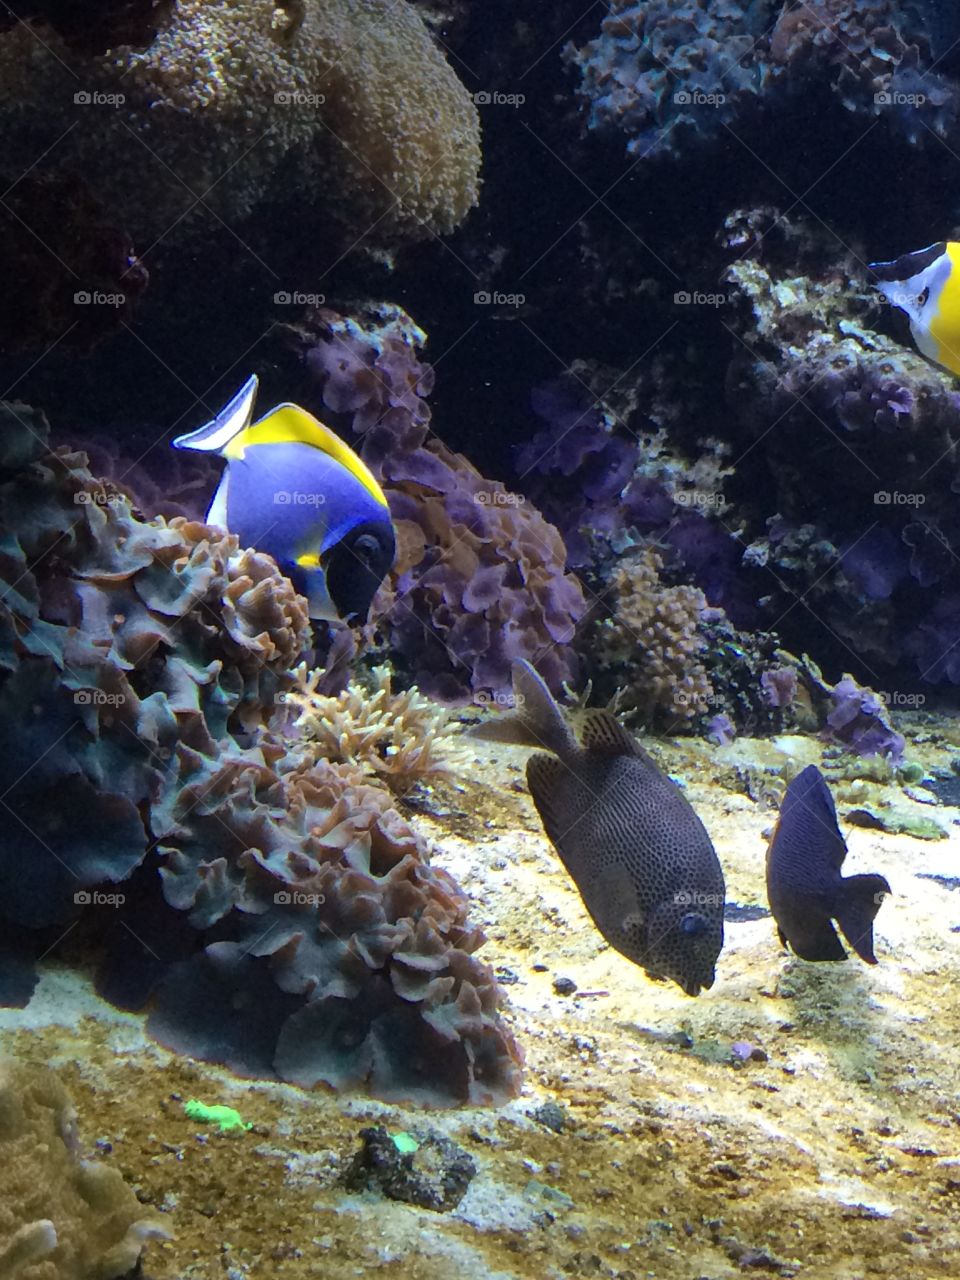 Fish from the Vancouver Aquarium 